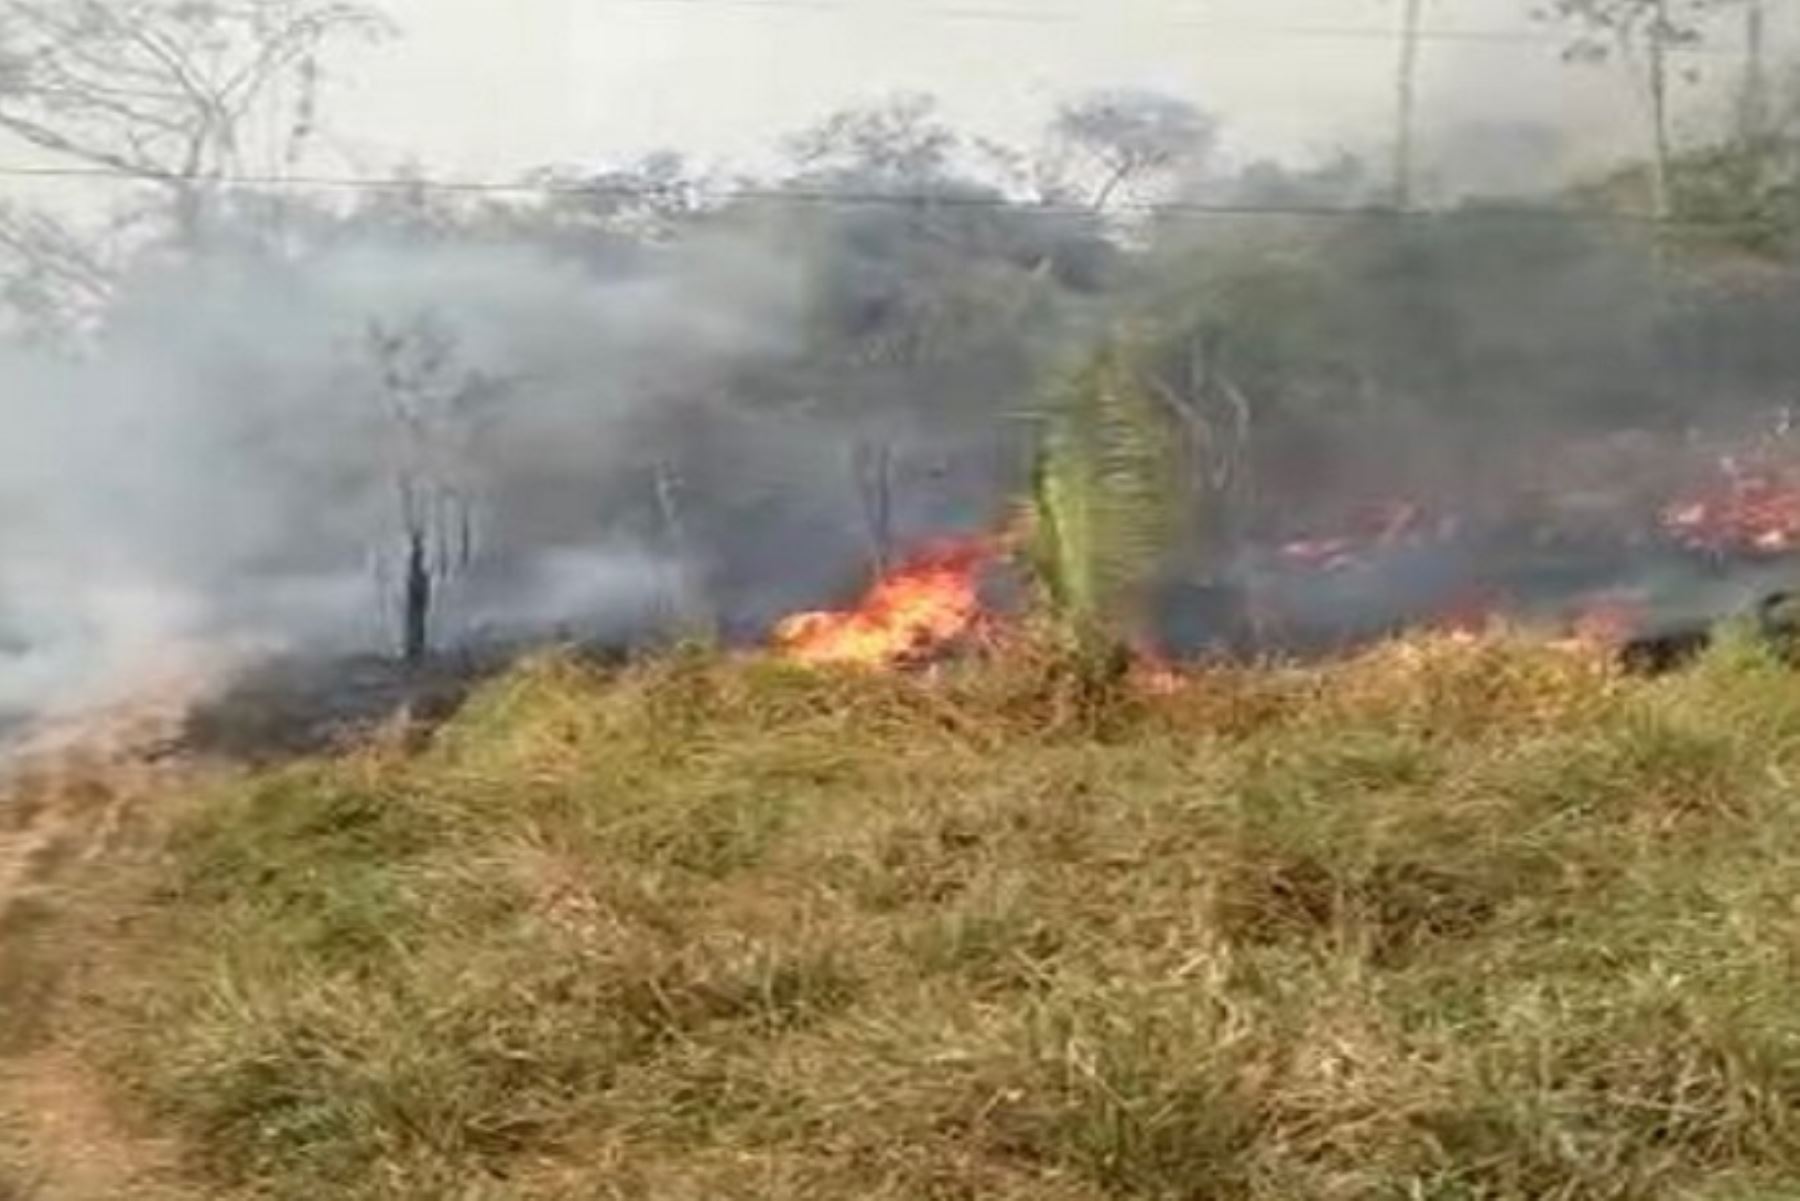 El incendio forestal que se produjo en la víspera en la comunidad Campesina de Urinsaya Ccollana, en el distrito y provincia de Anta, región Cusco, destruyó 3 hectáreas de cobertura natural, informó el Instituto Nacional de Defensa Civil (Indeci). ANDINA/Difusión